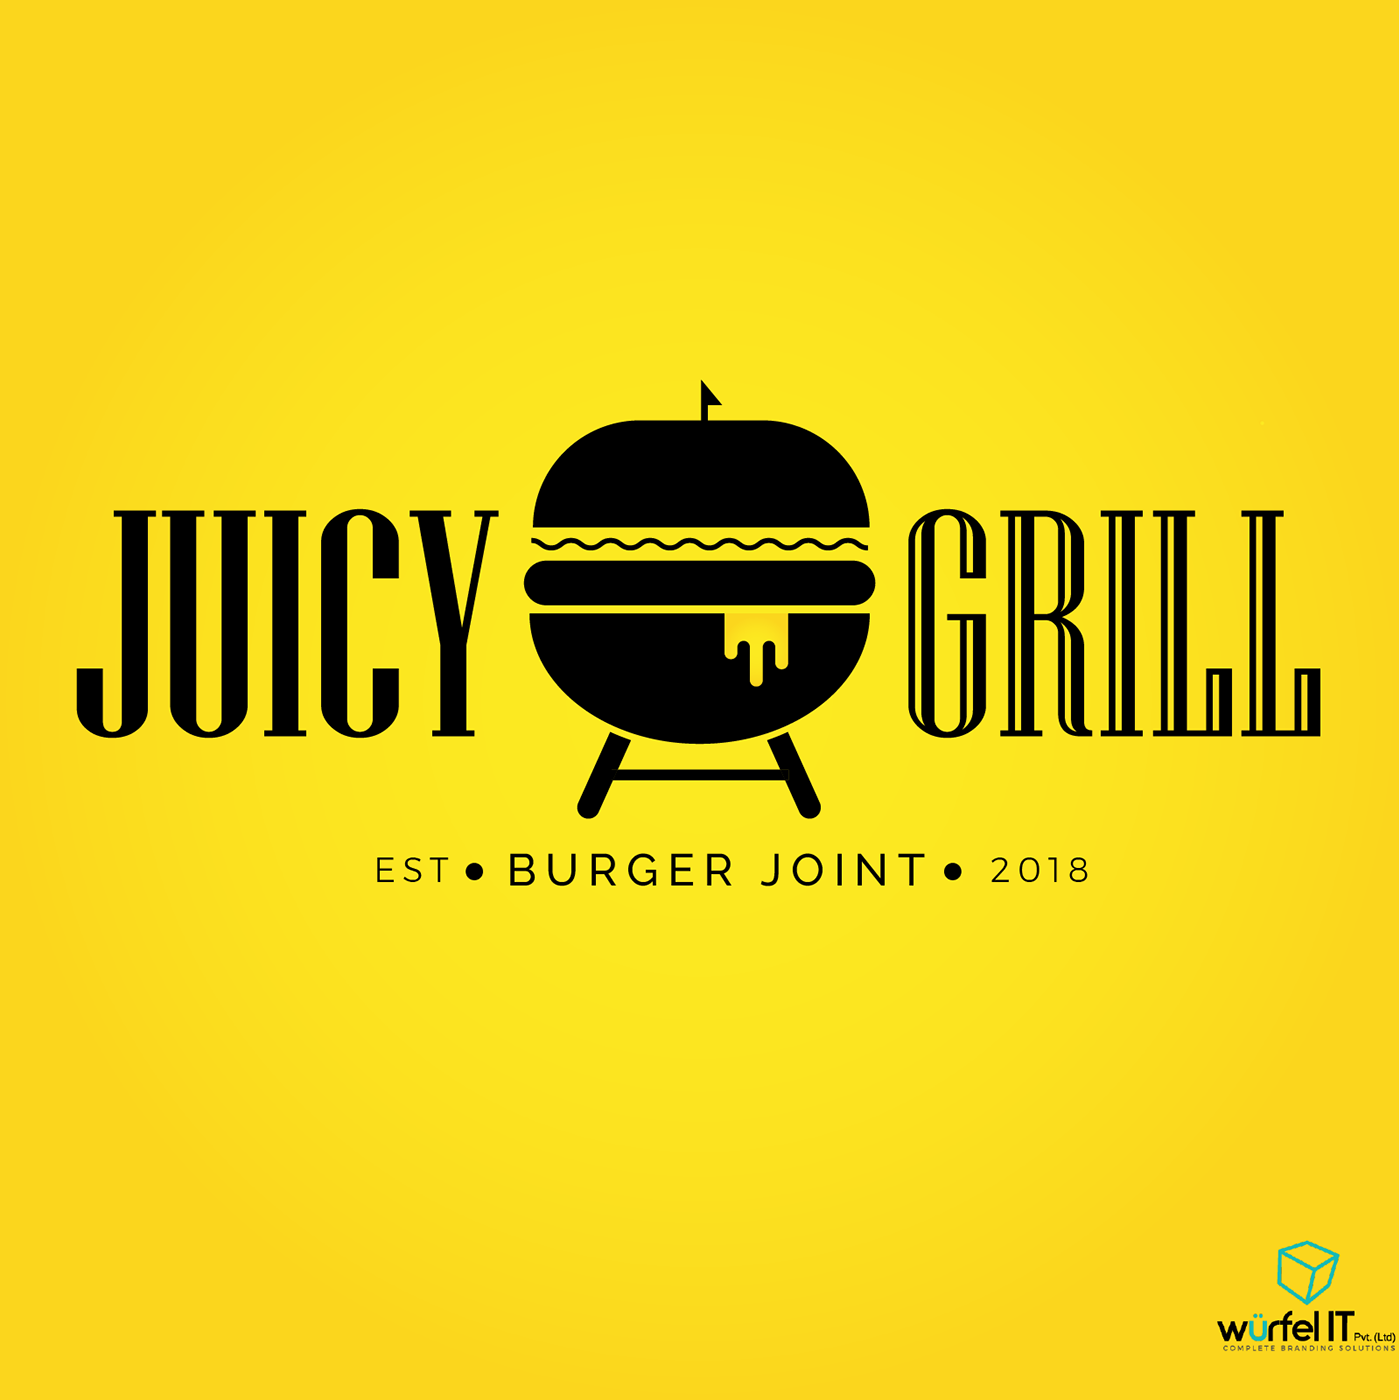 Fast food identity restaurant juicy grill grill burger logo designing social media marketing Content Marketing